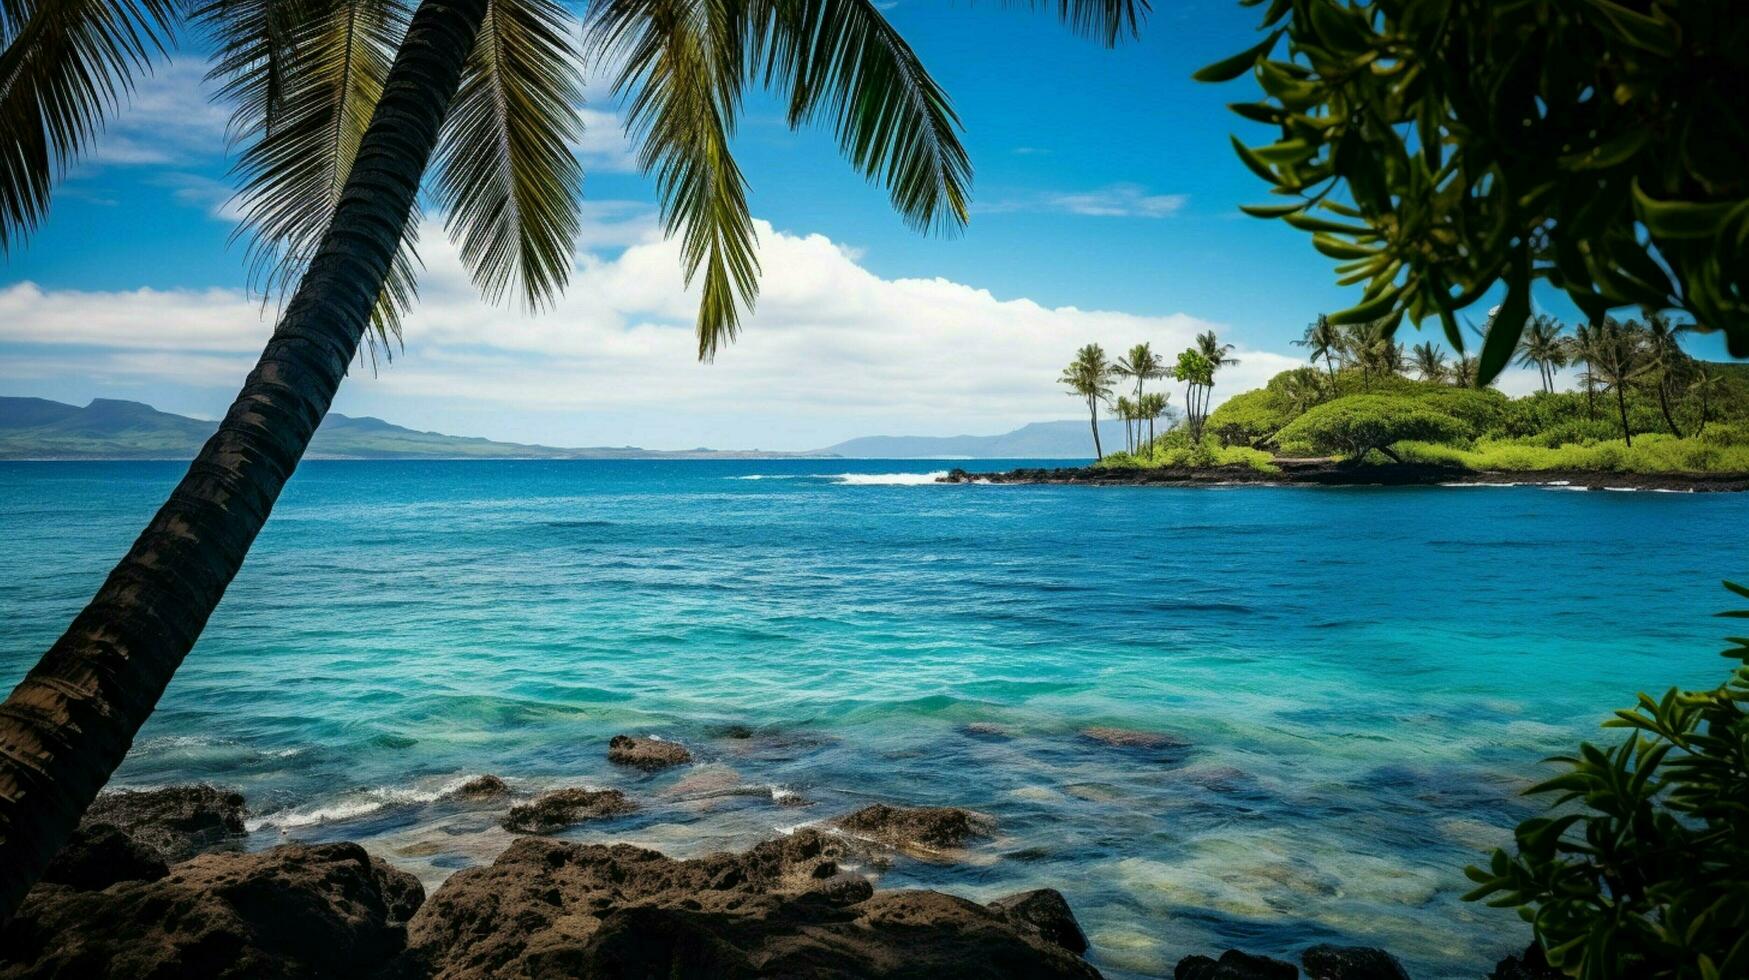 cenário azul oceano Havaí foto